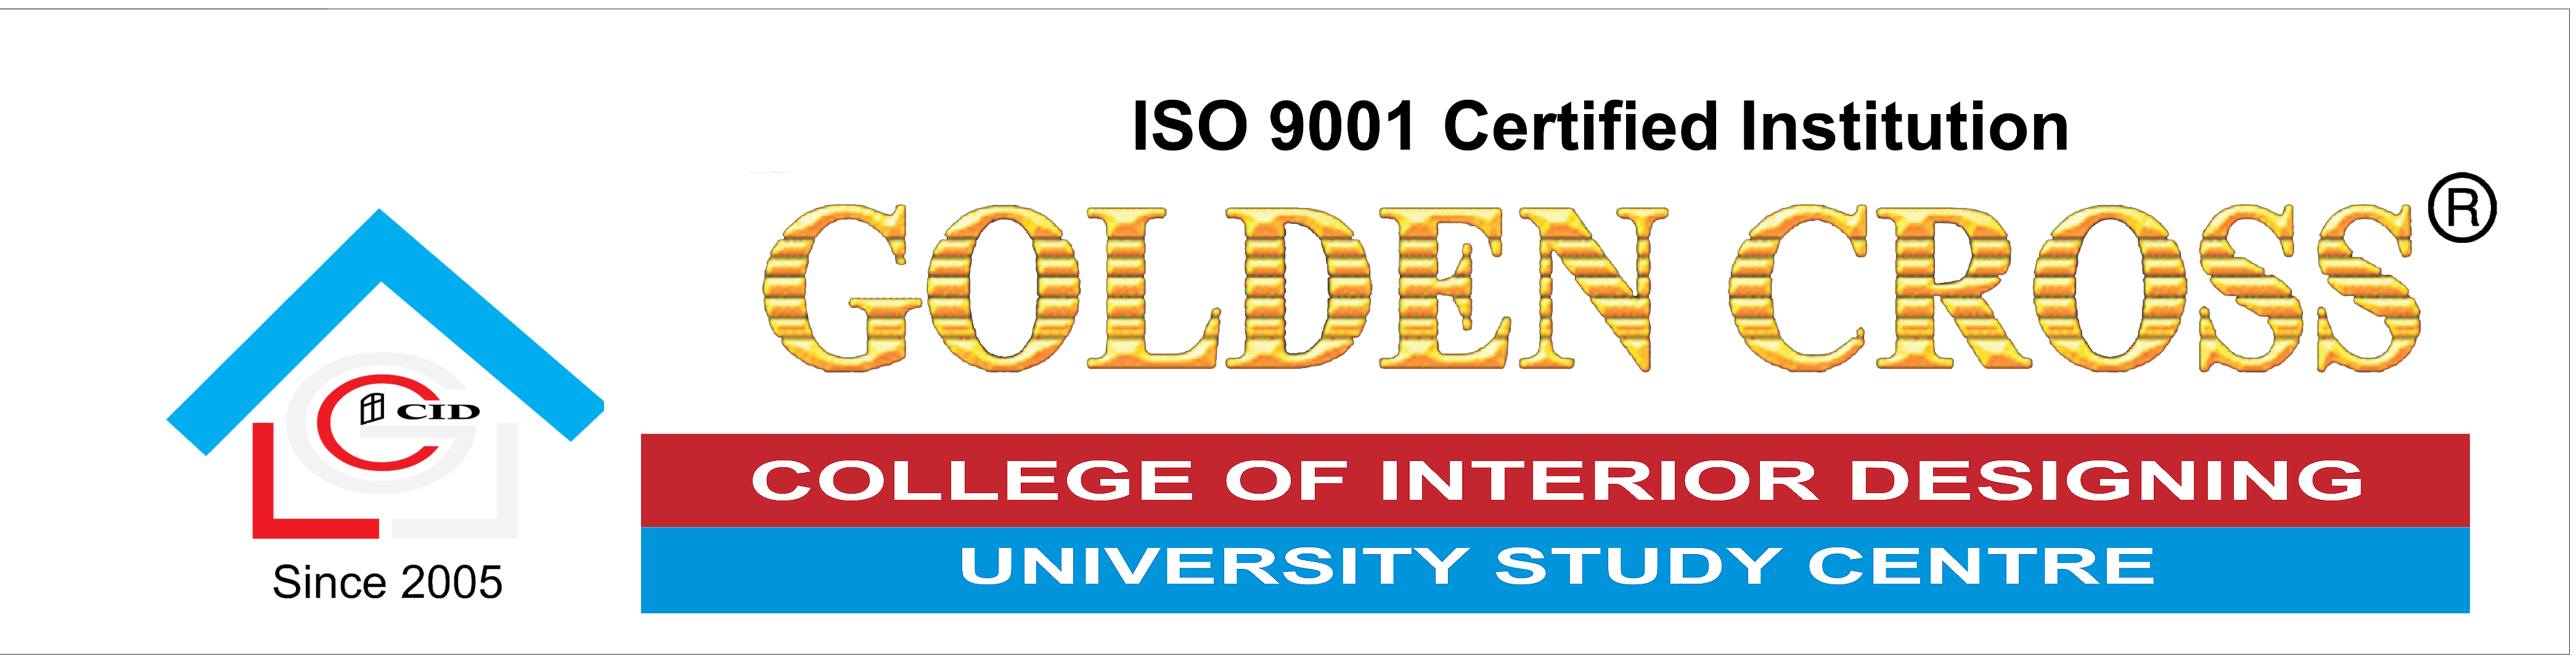 Golden Cross College of Interior Designing